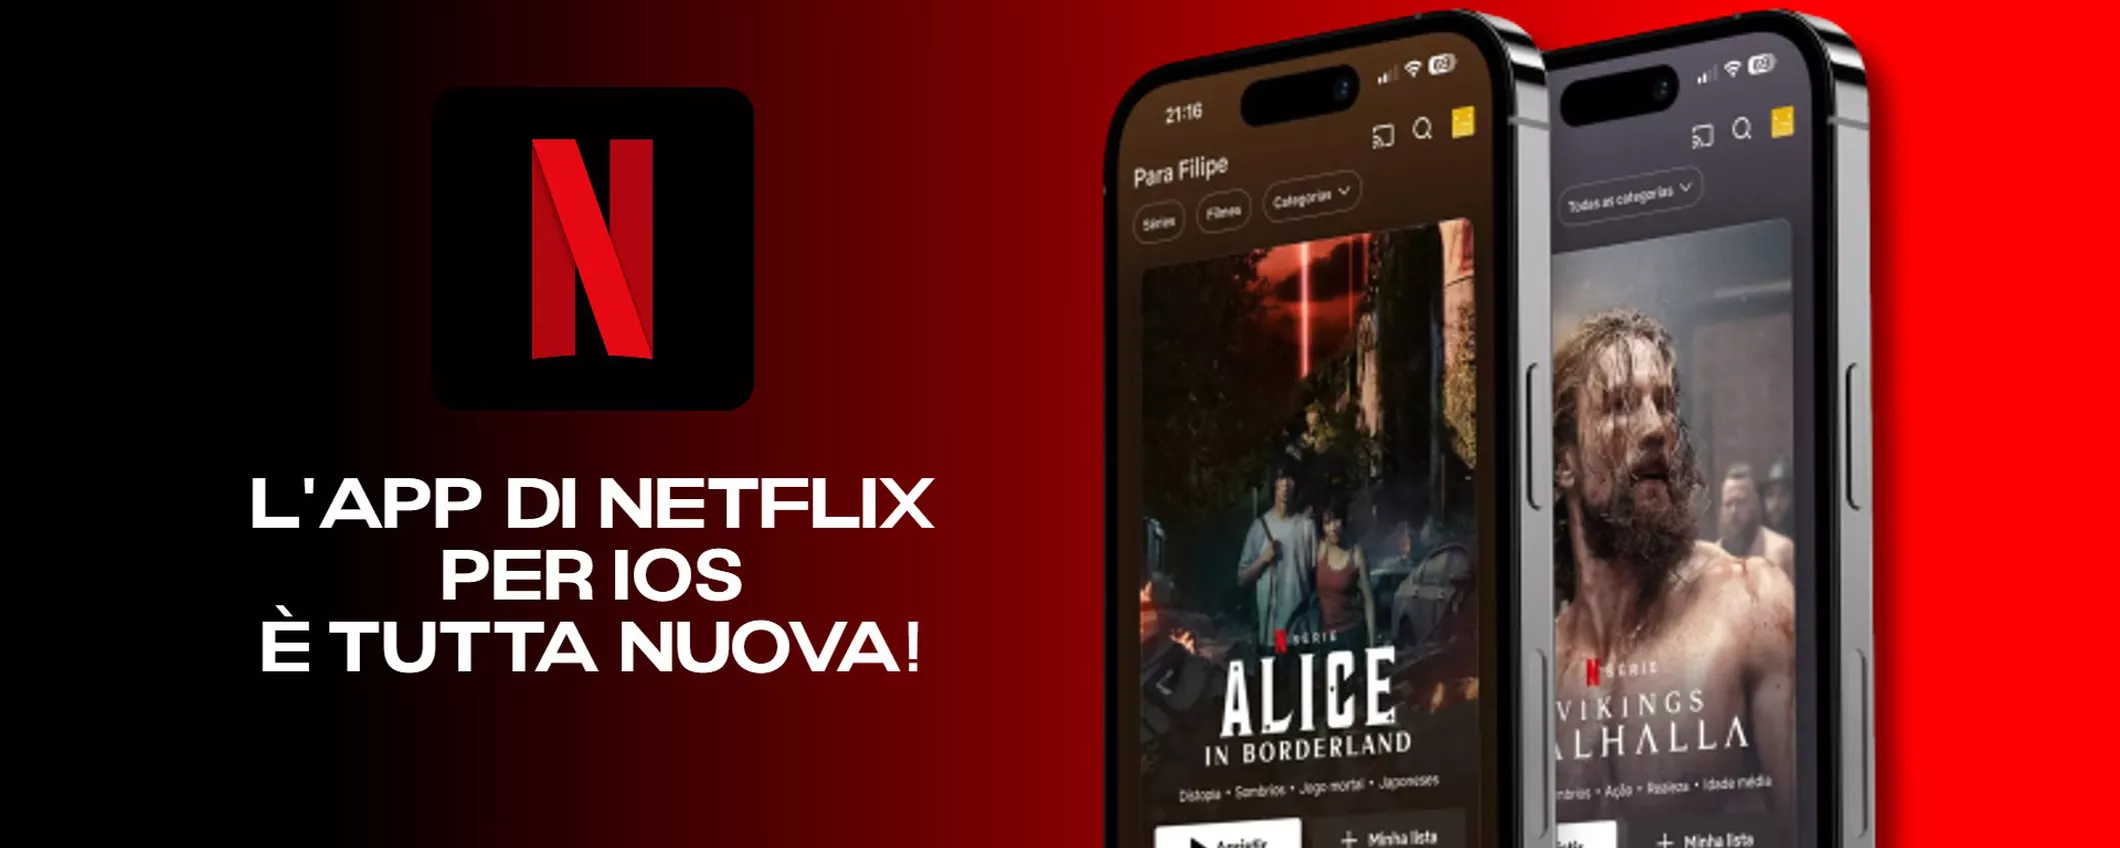 Netflix compie 16 anni e rinnova completamente l'app per iOS